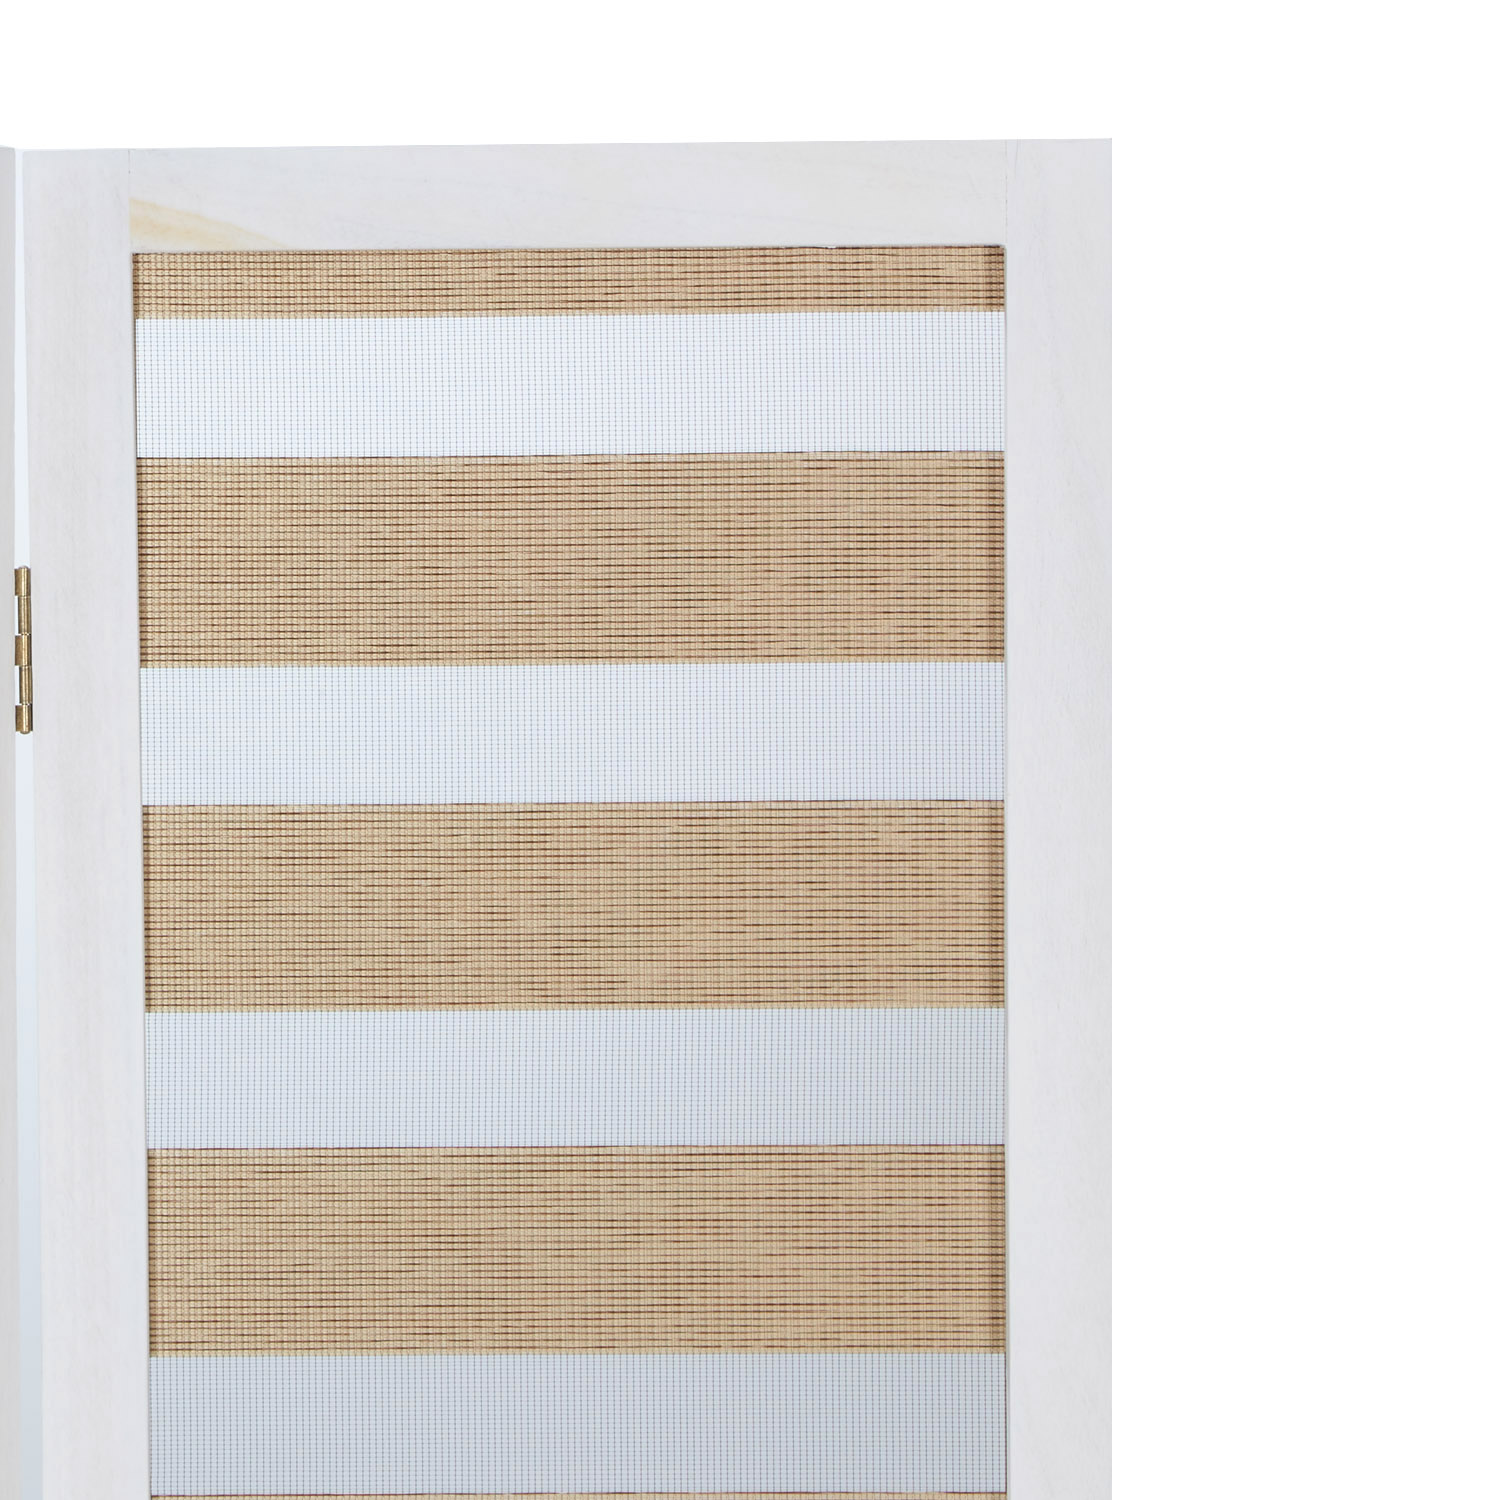 Paravent Raumteiler 3 teilig Holz Trennwand Sichtschutz Weiß Vintage